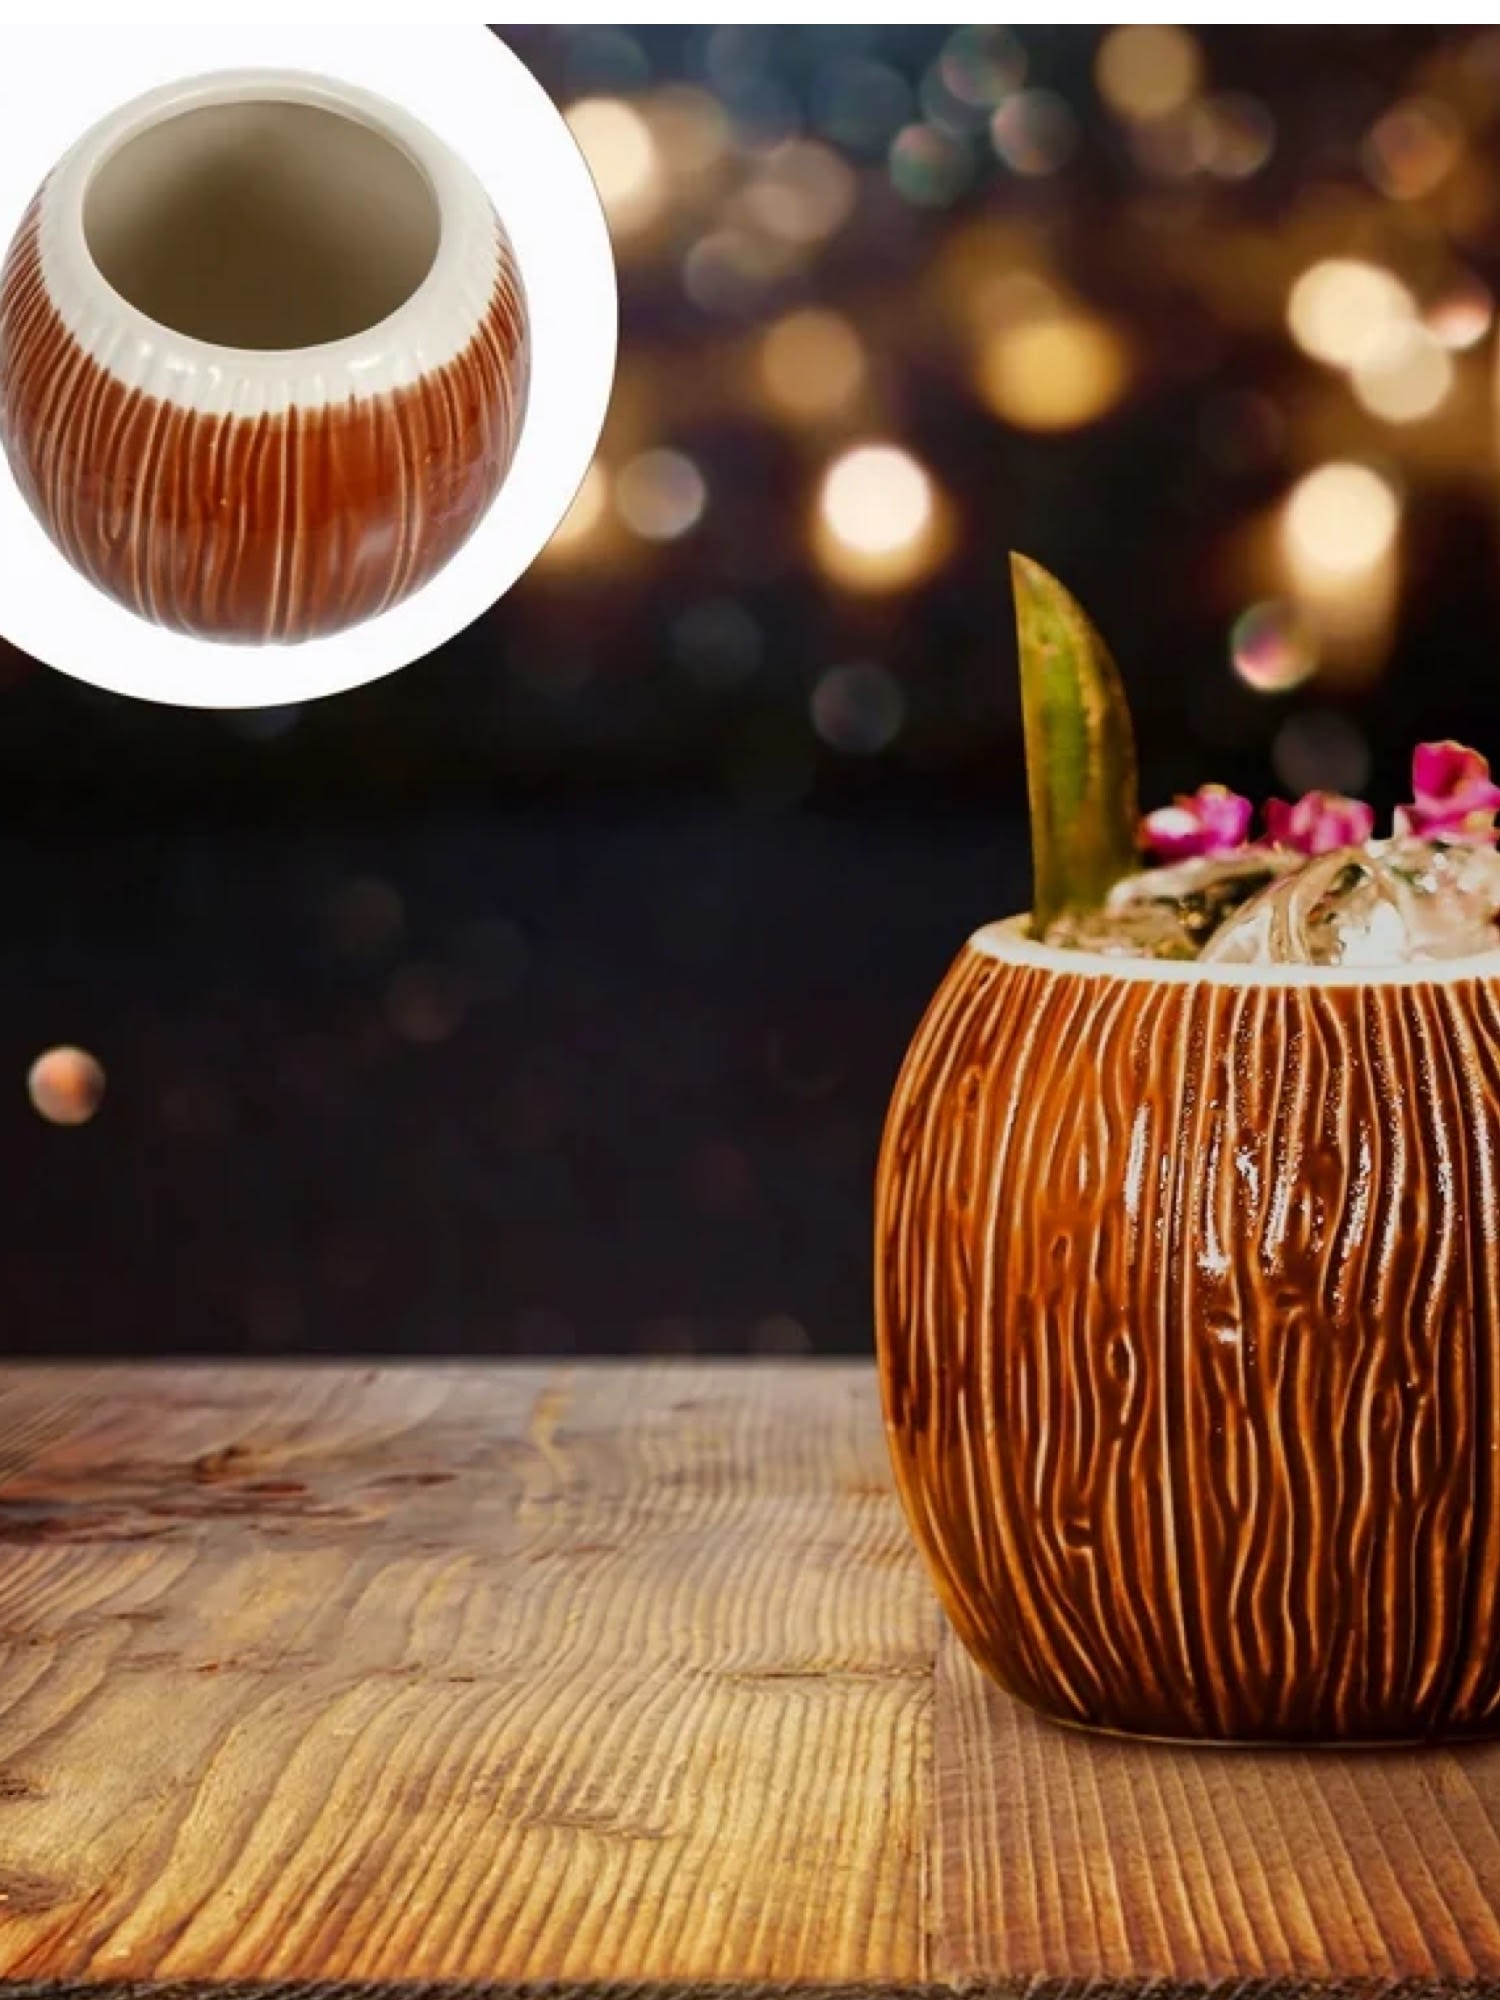 Tiki-Becher in Form einer Kokosnuss mit einem Fassungsvermögen von 500 ml - perfekt für tropische Getränke.